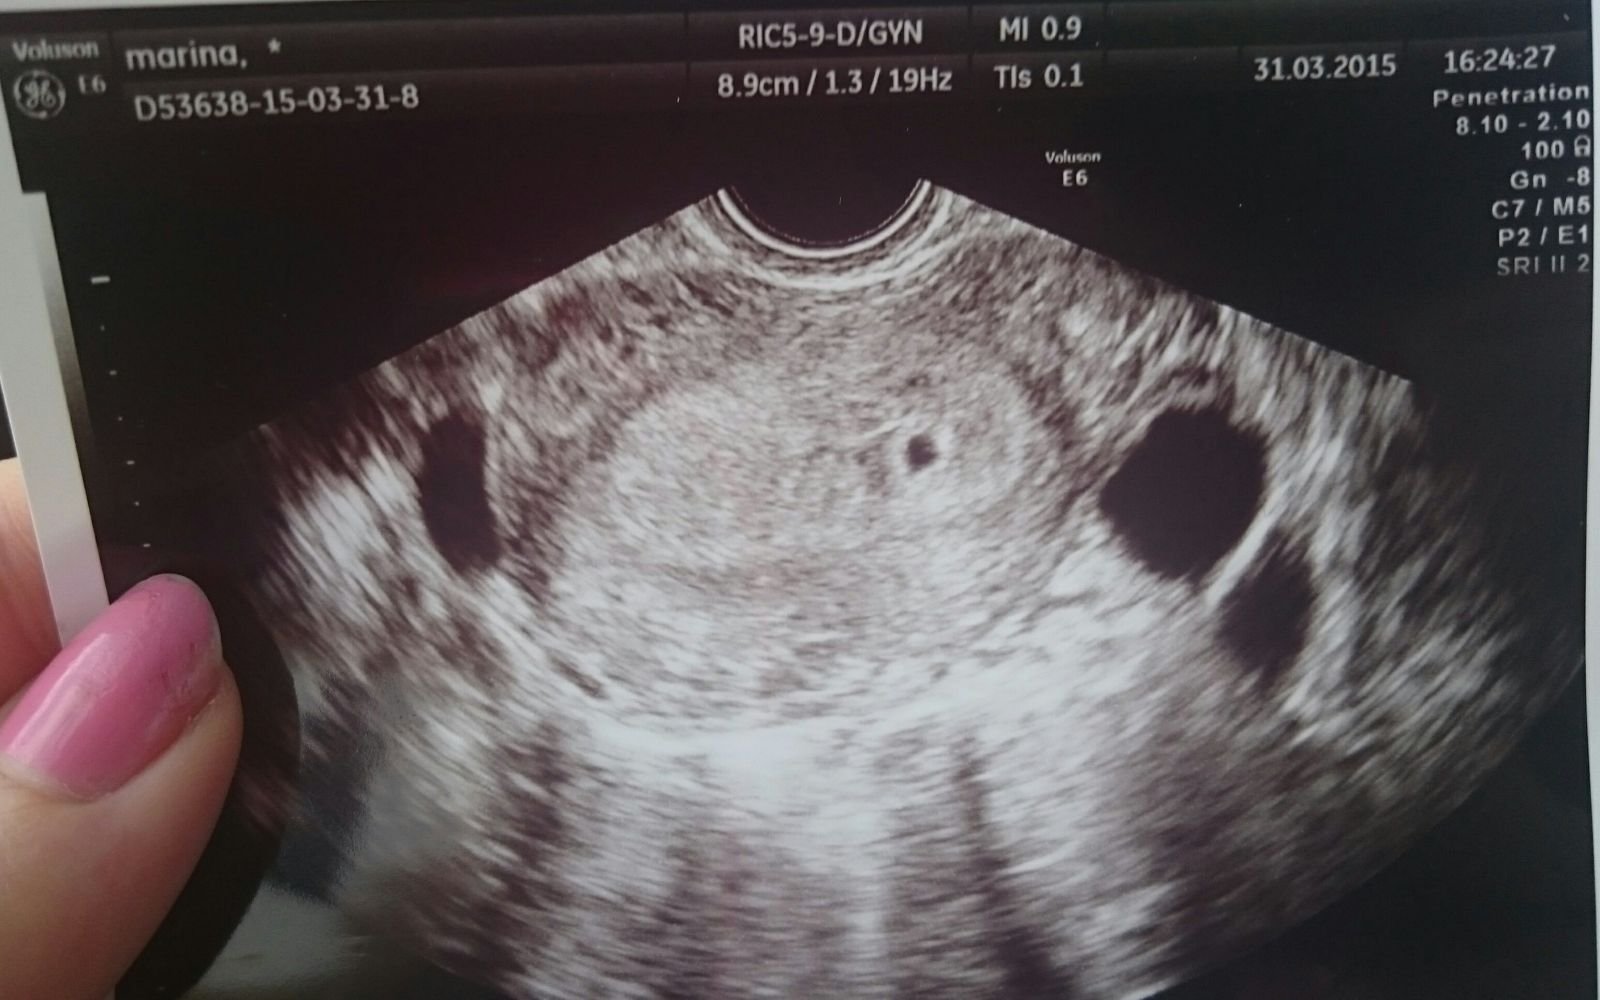 Беременность 4 недели видна на узи. УЗИ на 2-4 недели беременности. Снимок УЗИ 2-3 недели беременности. УЗИ 4 недели беременности. Эмбрион на 4 неделе беременности УЗИ.